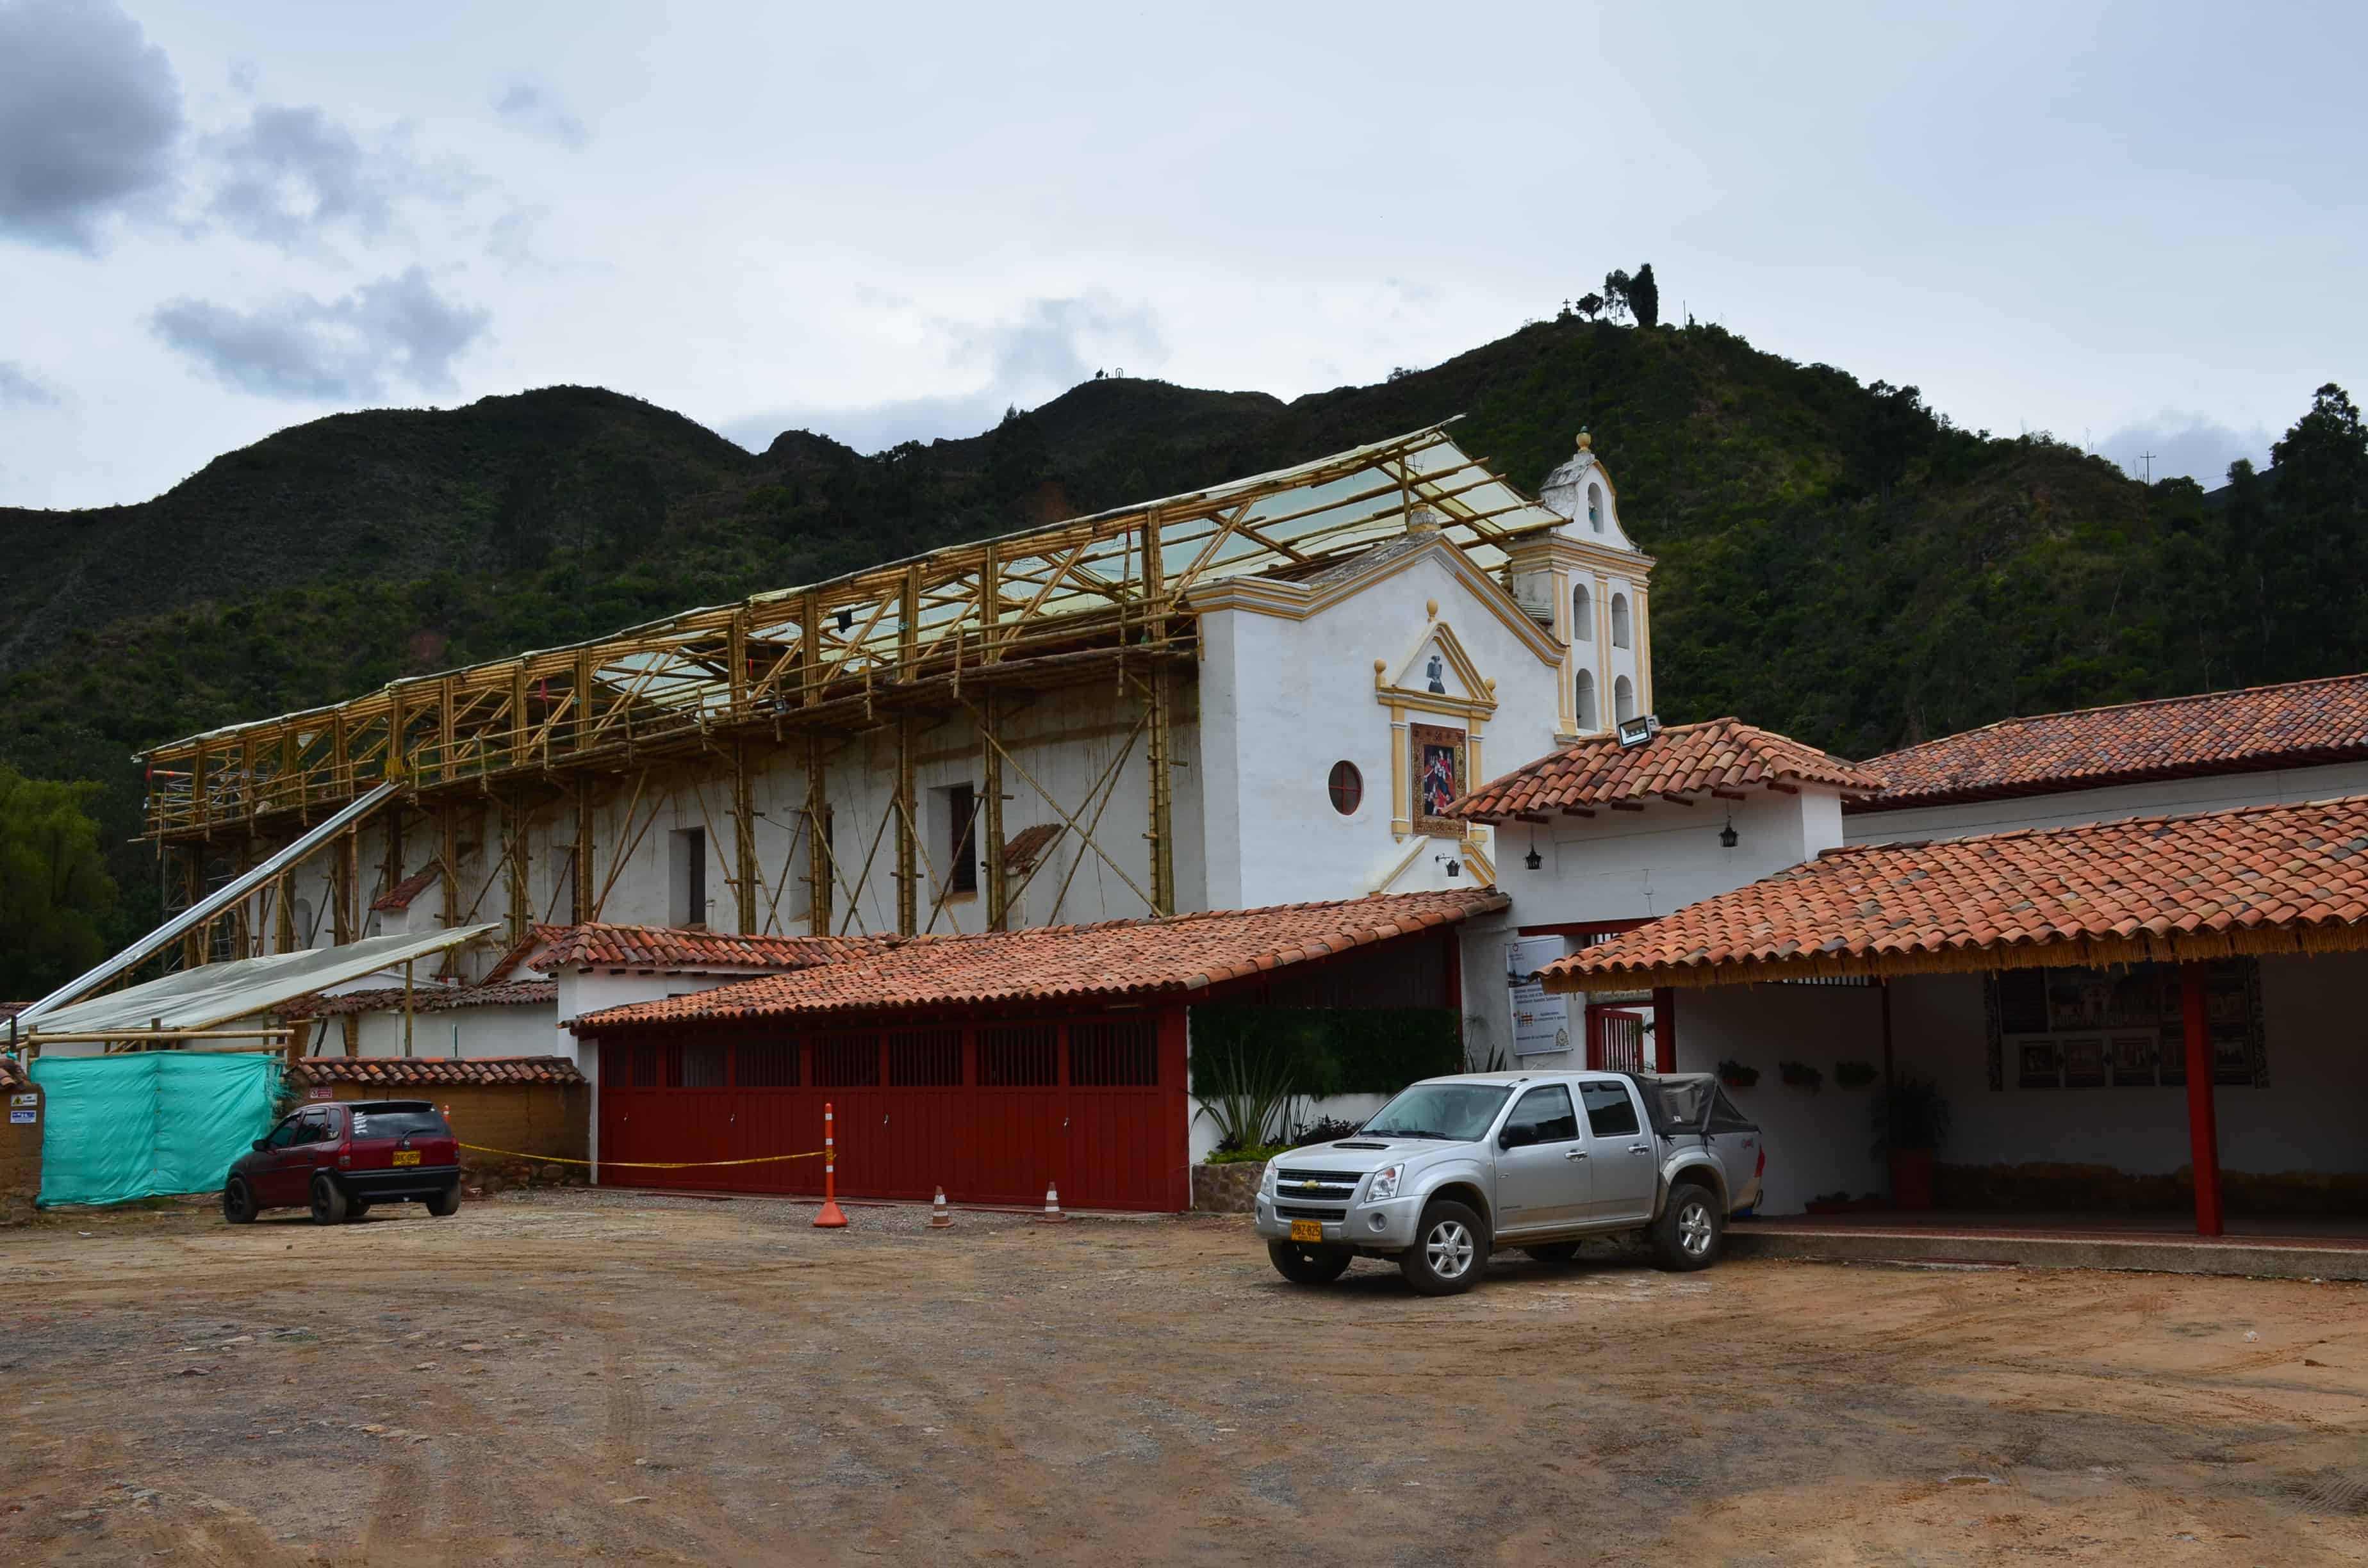 Church in March 2018 at La Candelaria Monastery, Boyacá, Colombia